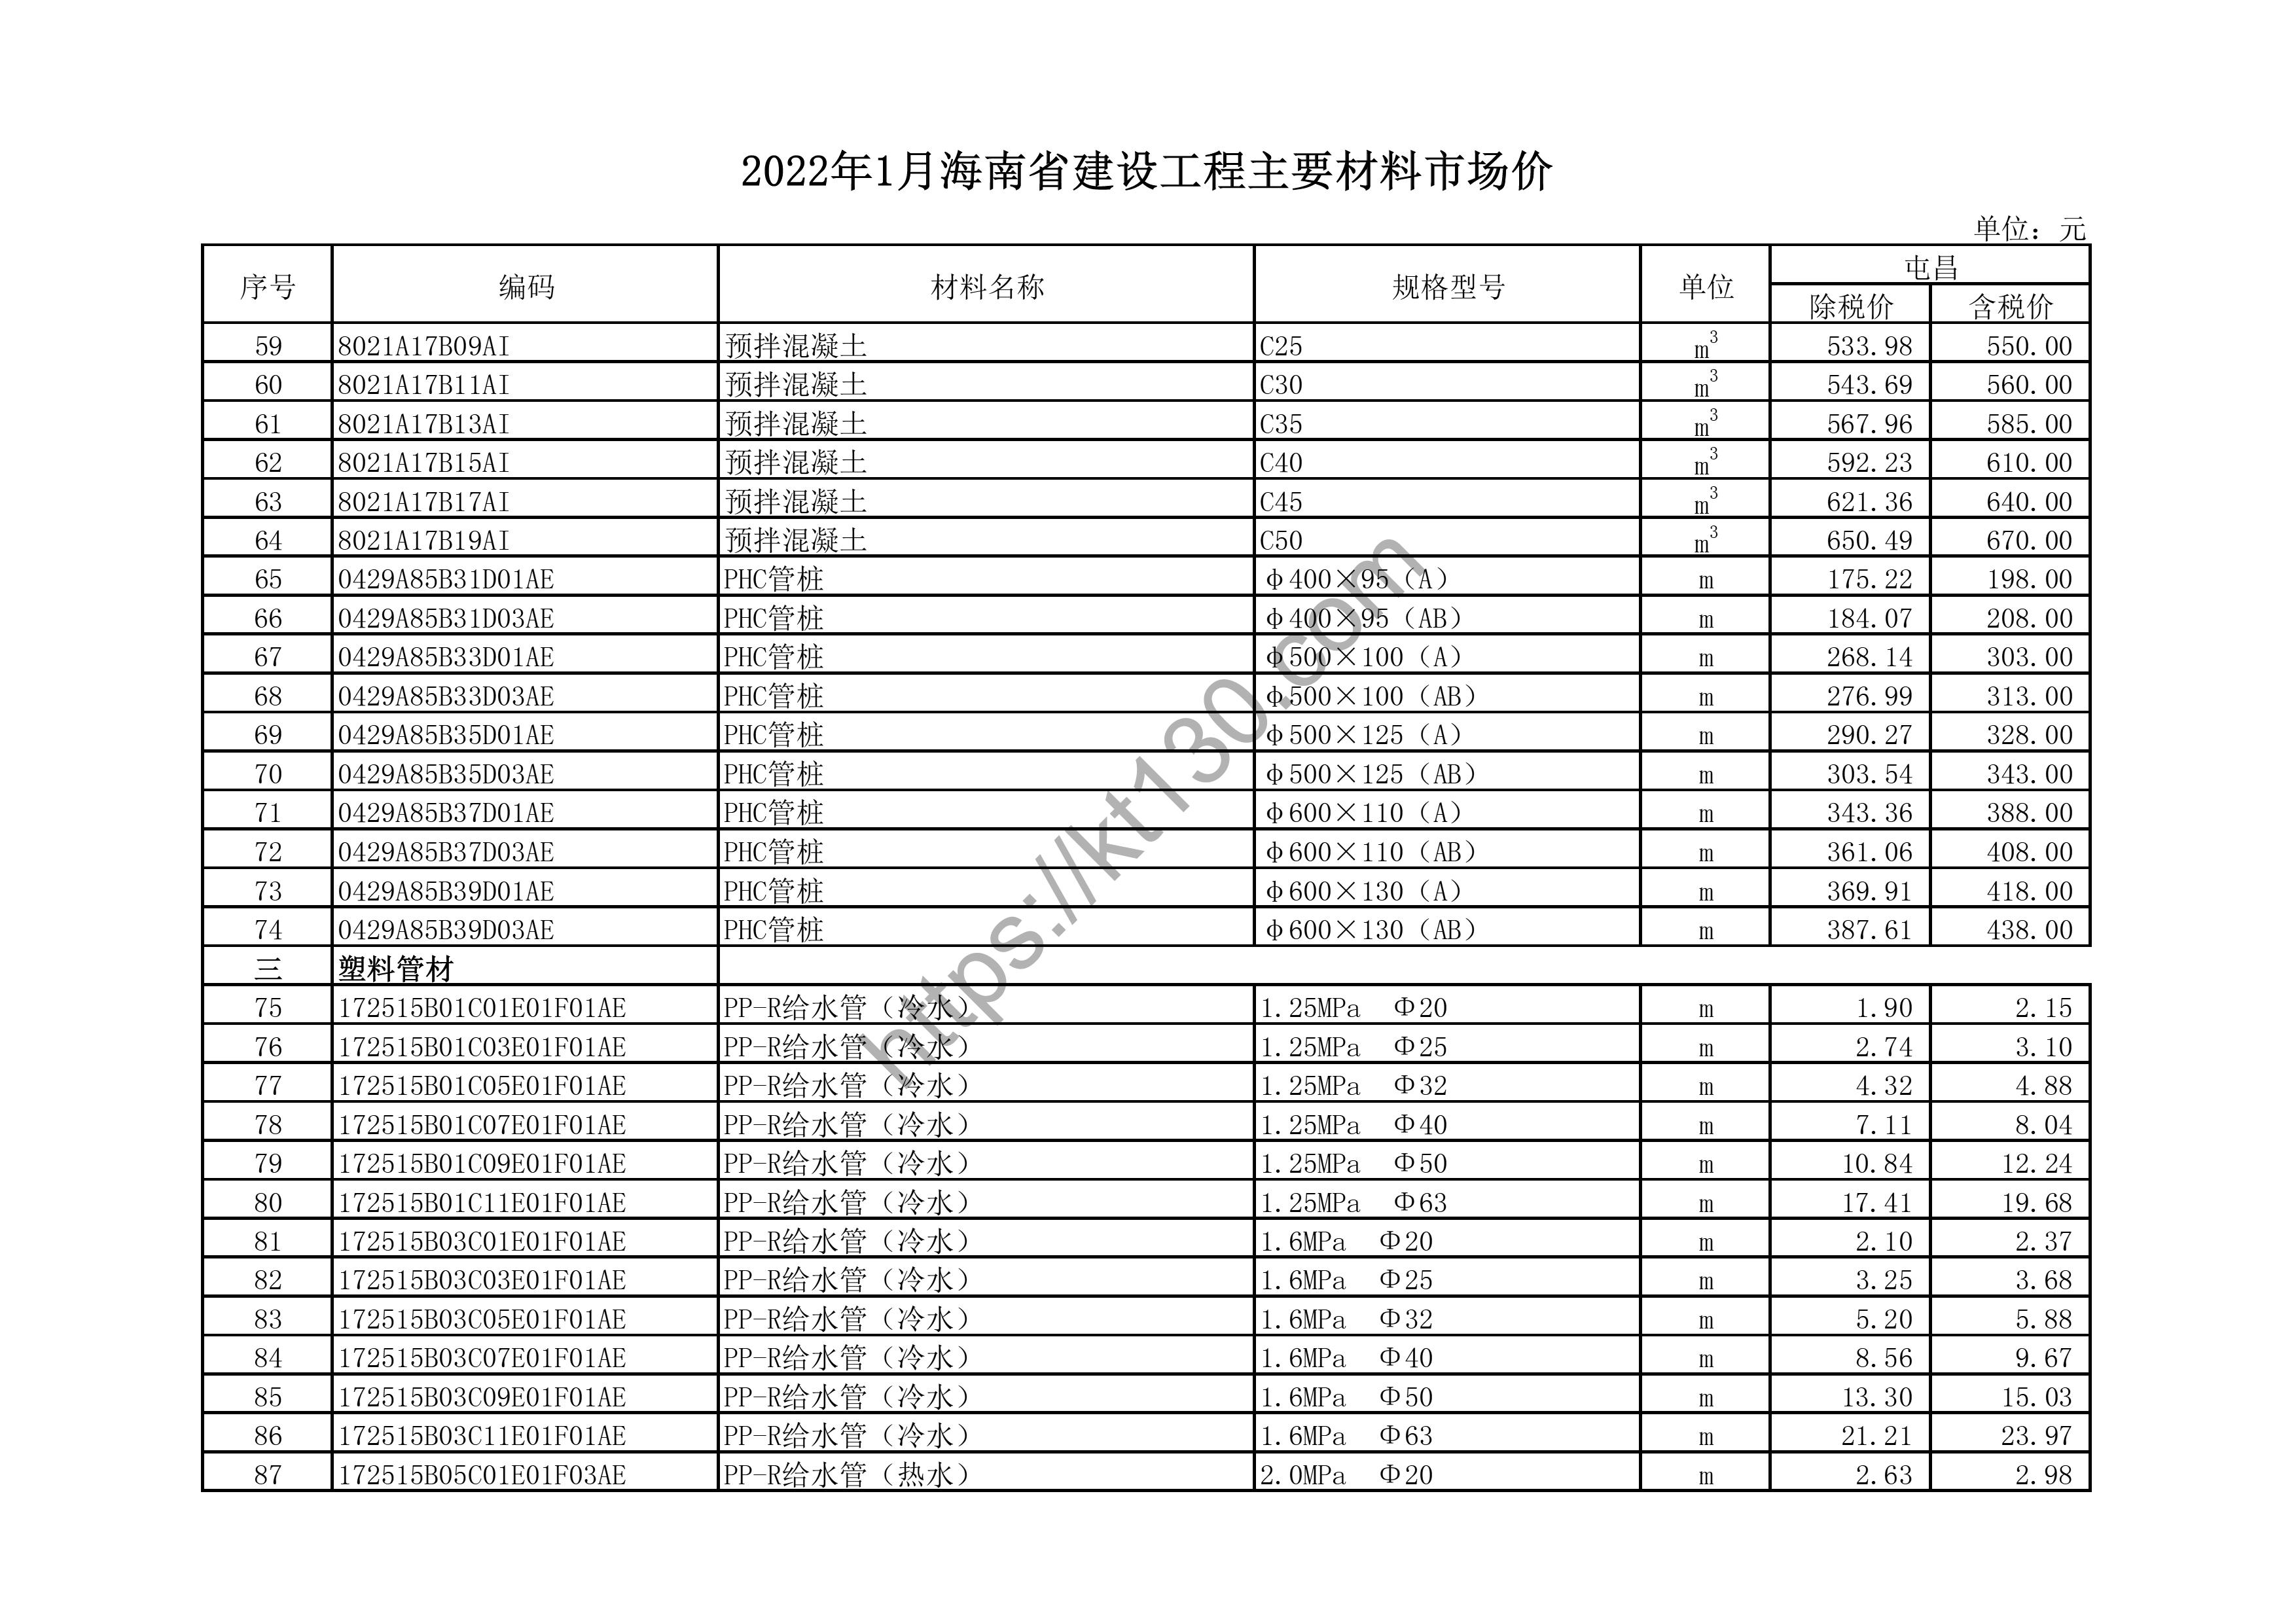 海南省2022年1月建筑材料价_pp-r给水管_43679